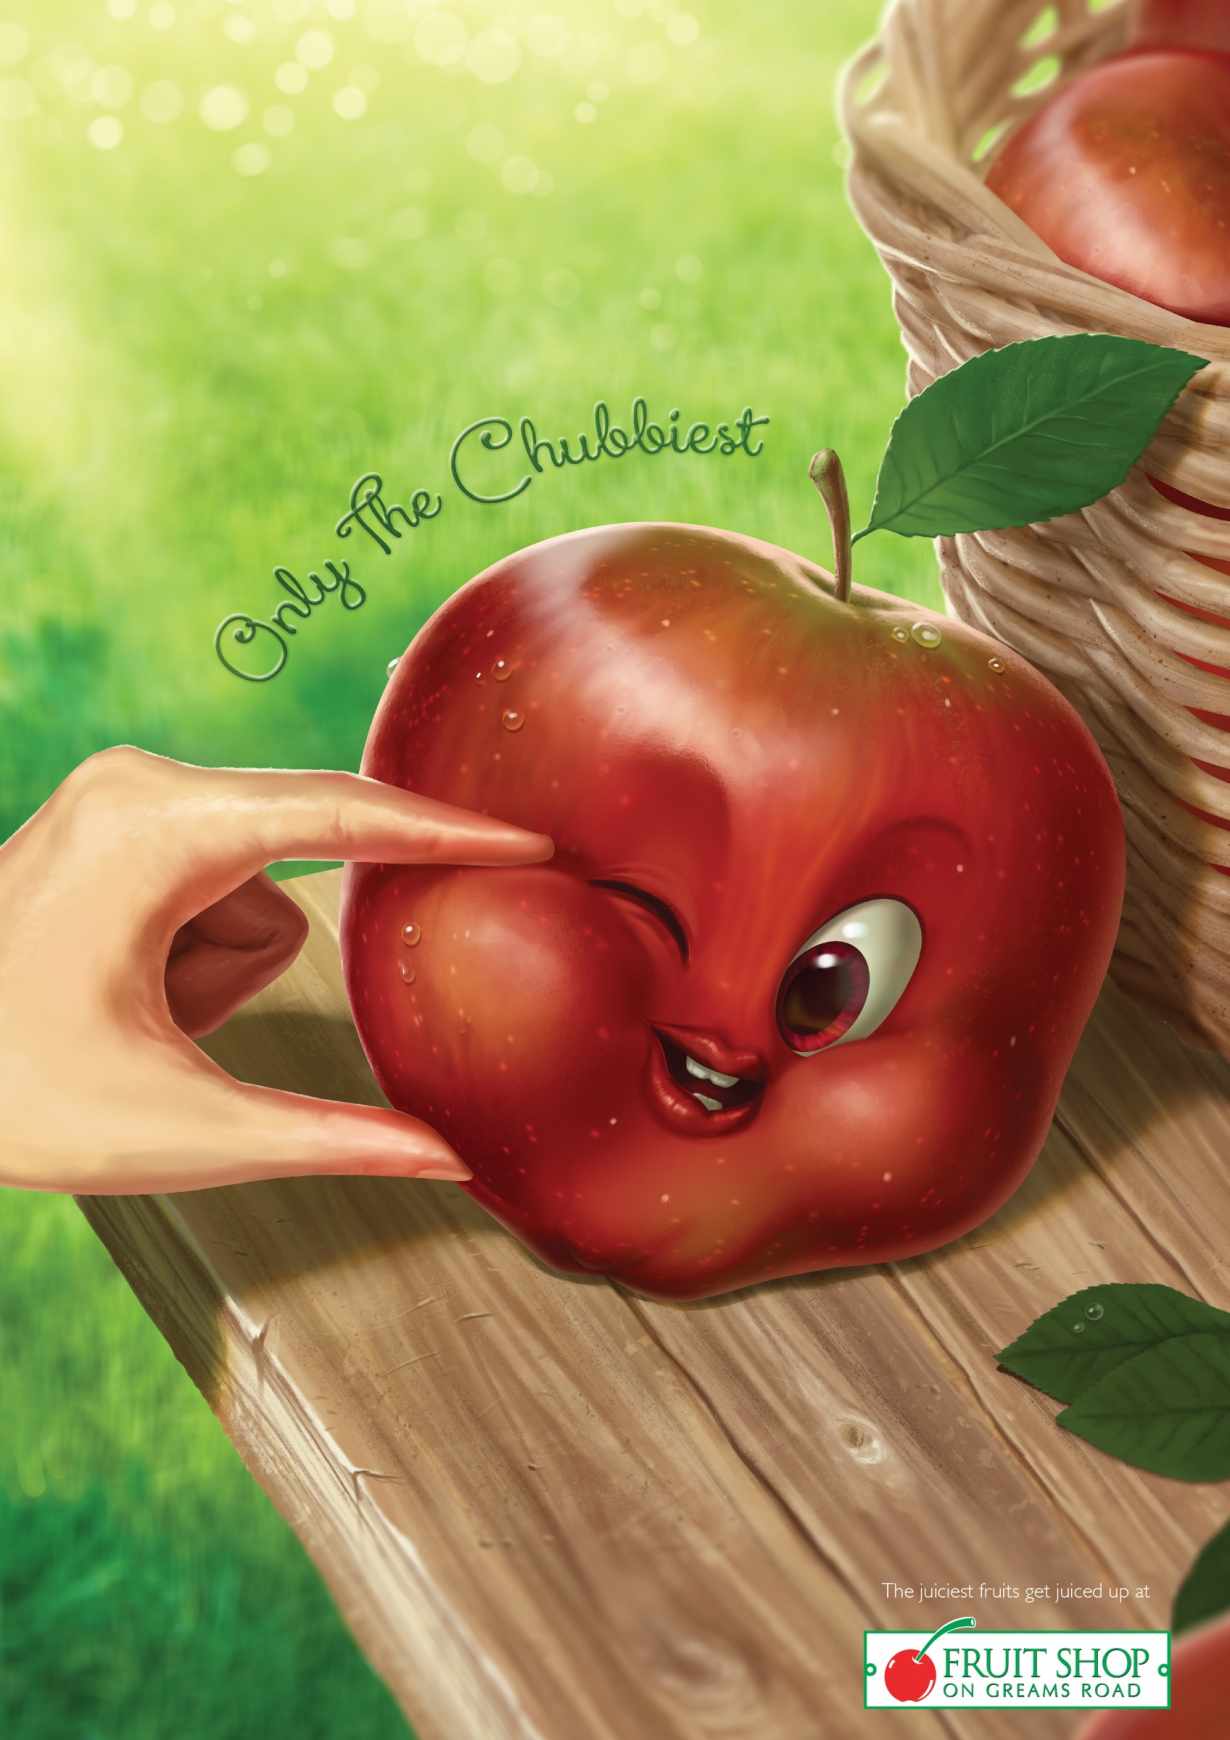 马路阳光新鲜水果店水果娃娃平面广告创意设计-苹果篇